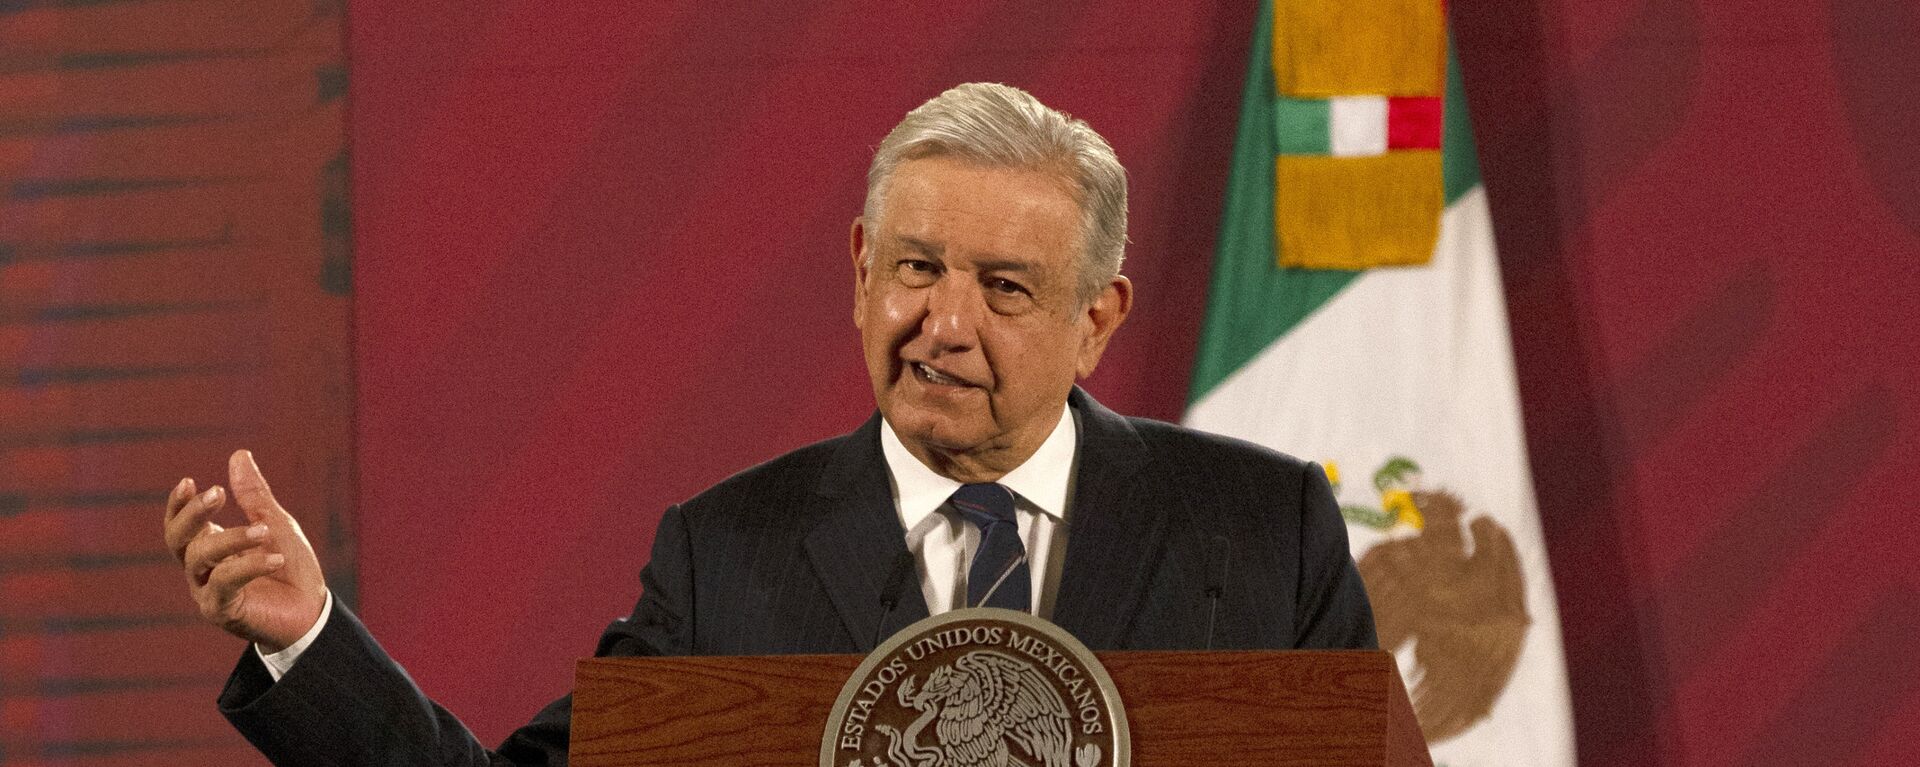 Andrés Manuel López Obrador, presidente de México - Sputnik Mundo, 1920, 22.01.2021